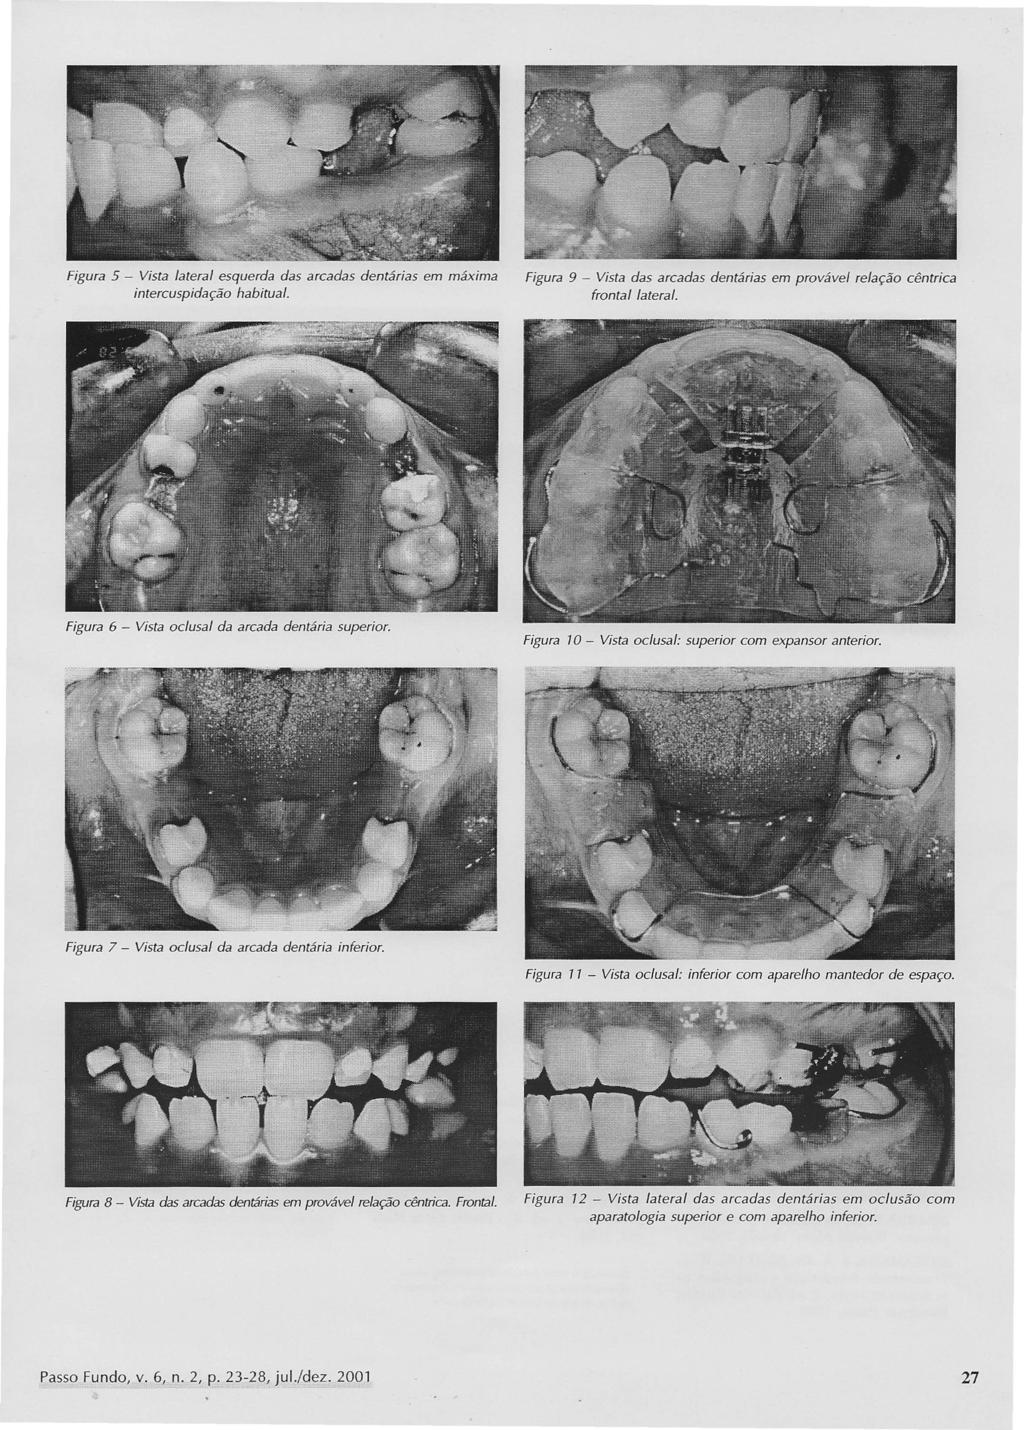 Figura 5 - Vista lateral esquerda das arcadas dentárias em máxima intercuspidação habitual. Figura 9 - Vista das arcadas dentárias em provável relação cêntrica frontal lateral.